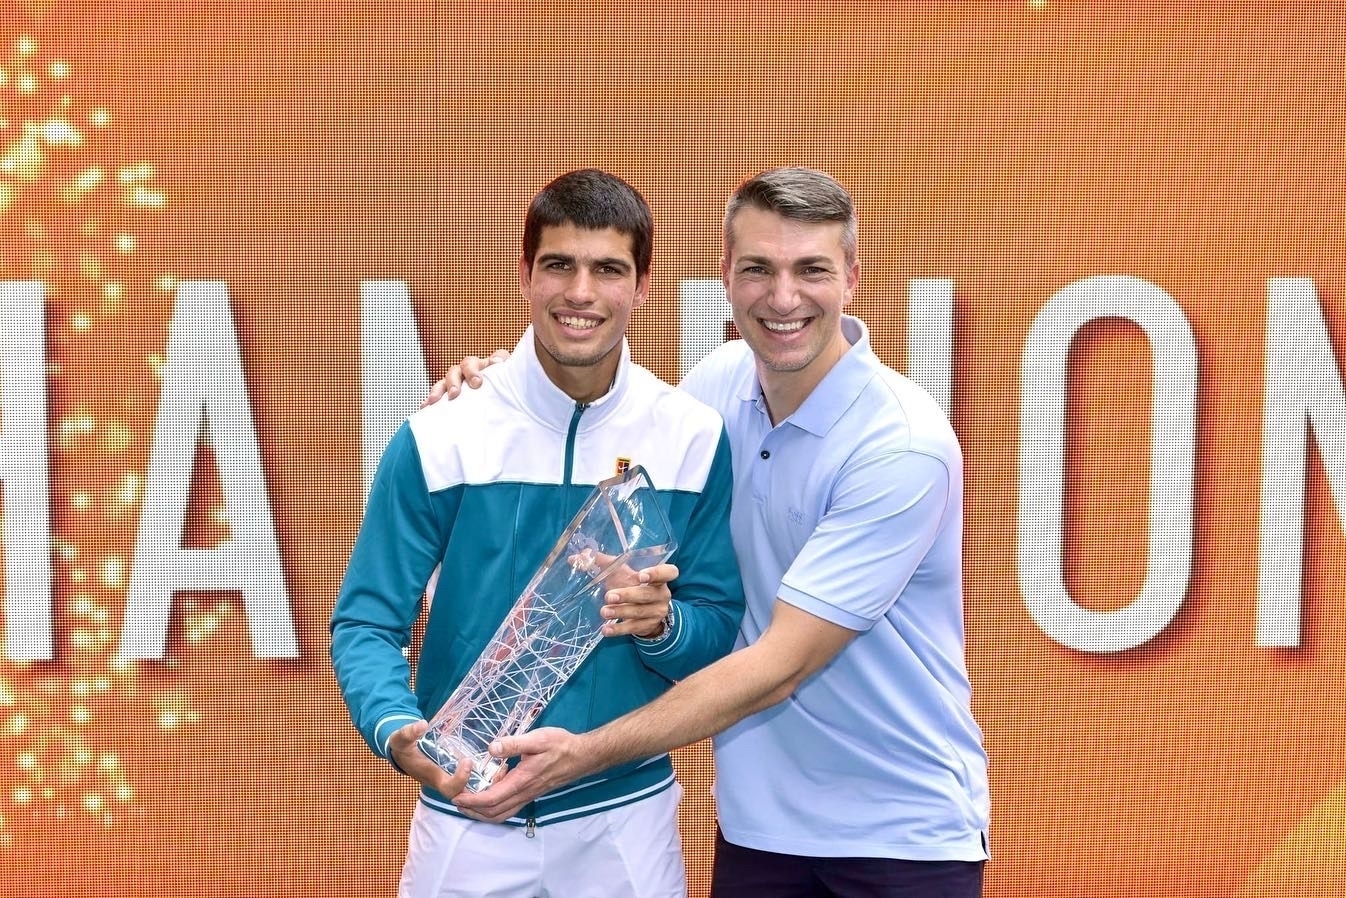 El doctor Juanjo López junto a Carlos Alcaraz, el tenista murciano que en la imagen porta el trofeo de campeón del Masters 1000 de Miami